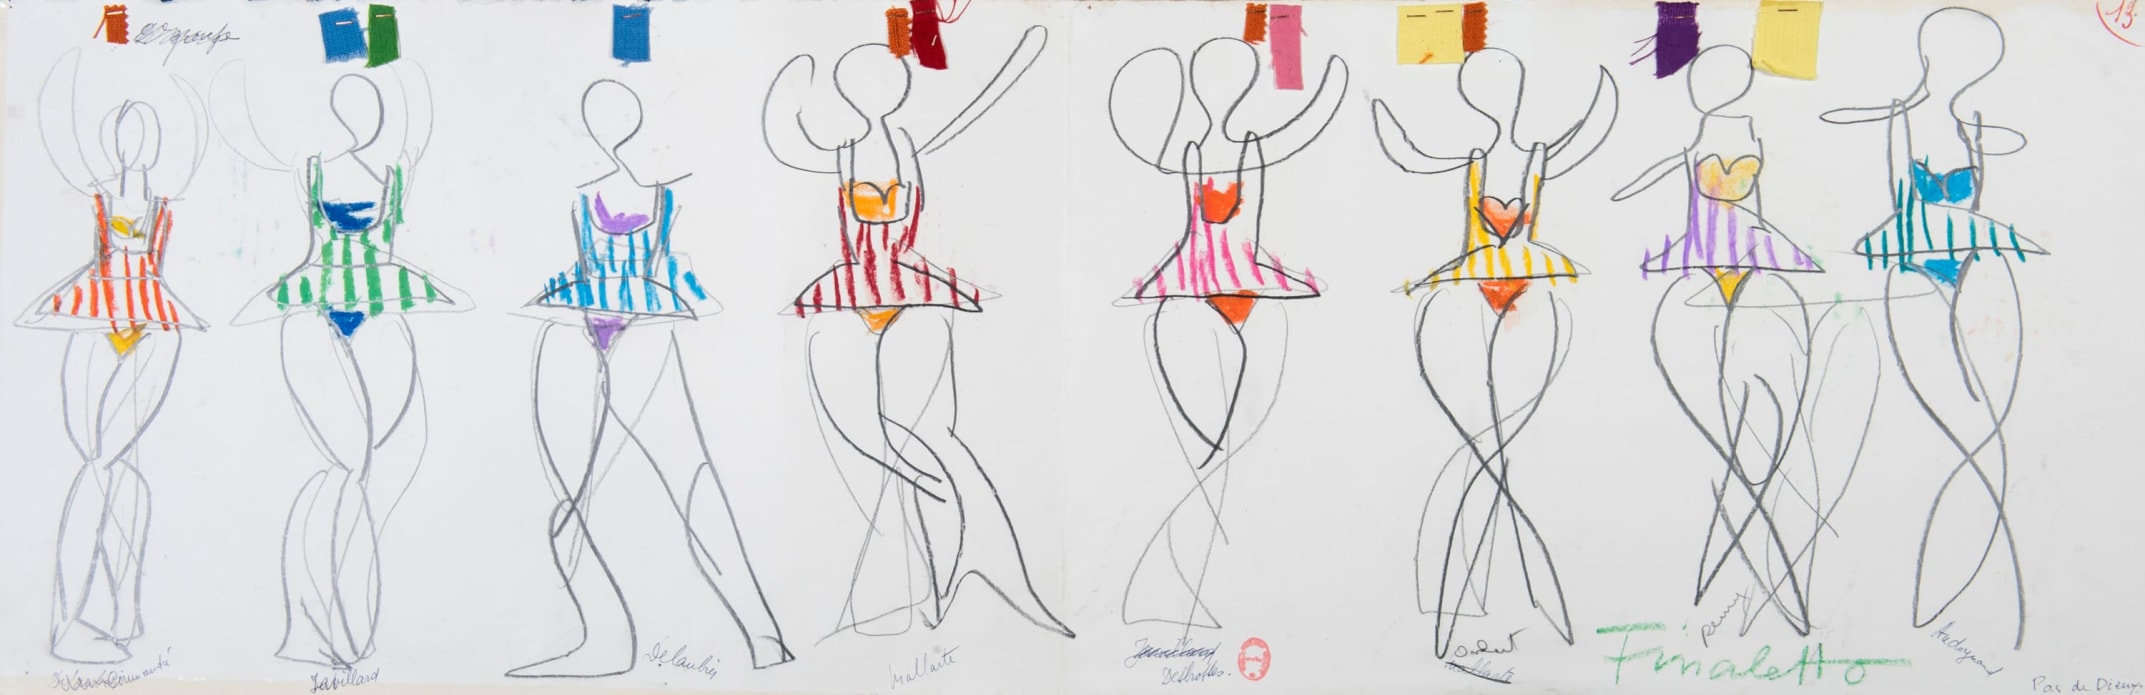 Maquette de costumes pour Pas de dieux de Gene Kelly par André François, 1960
Gouache, crayon, pastel et échantillons de tissus